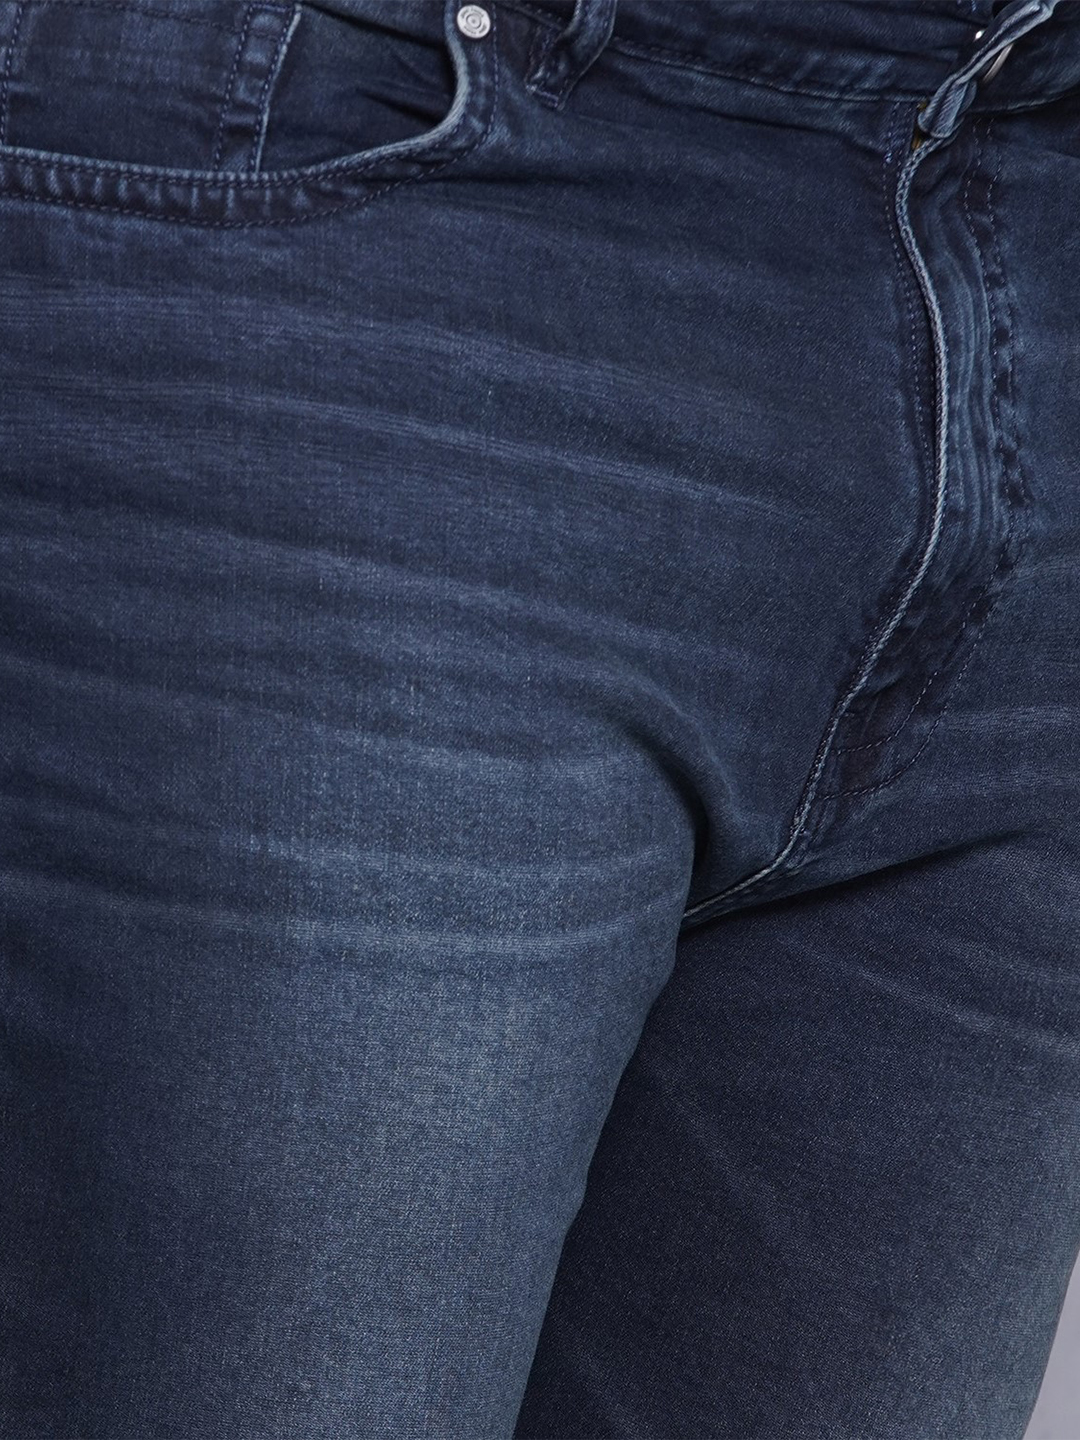 bottomwear/jeans/JPJ12436/jpj12436-2.jpg